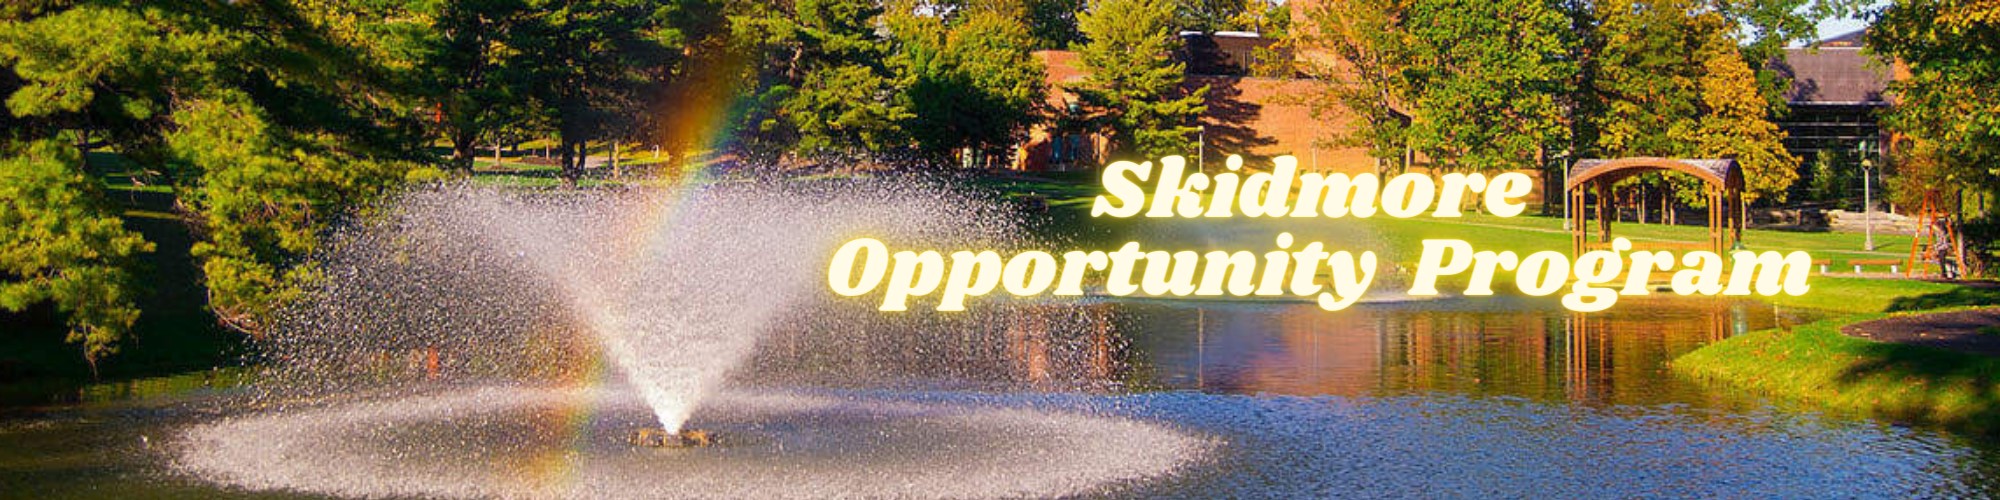 Skidmore Opportunity Program banner